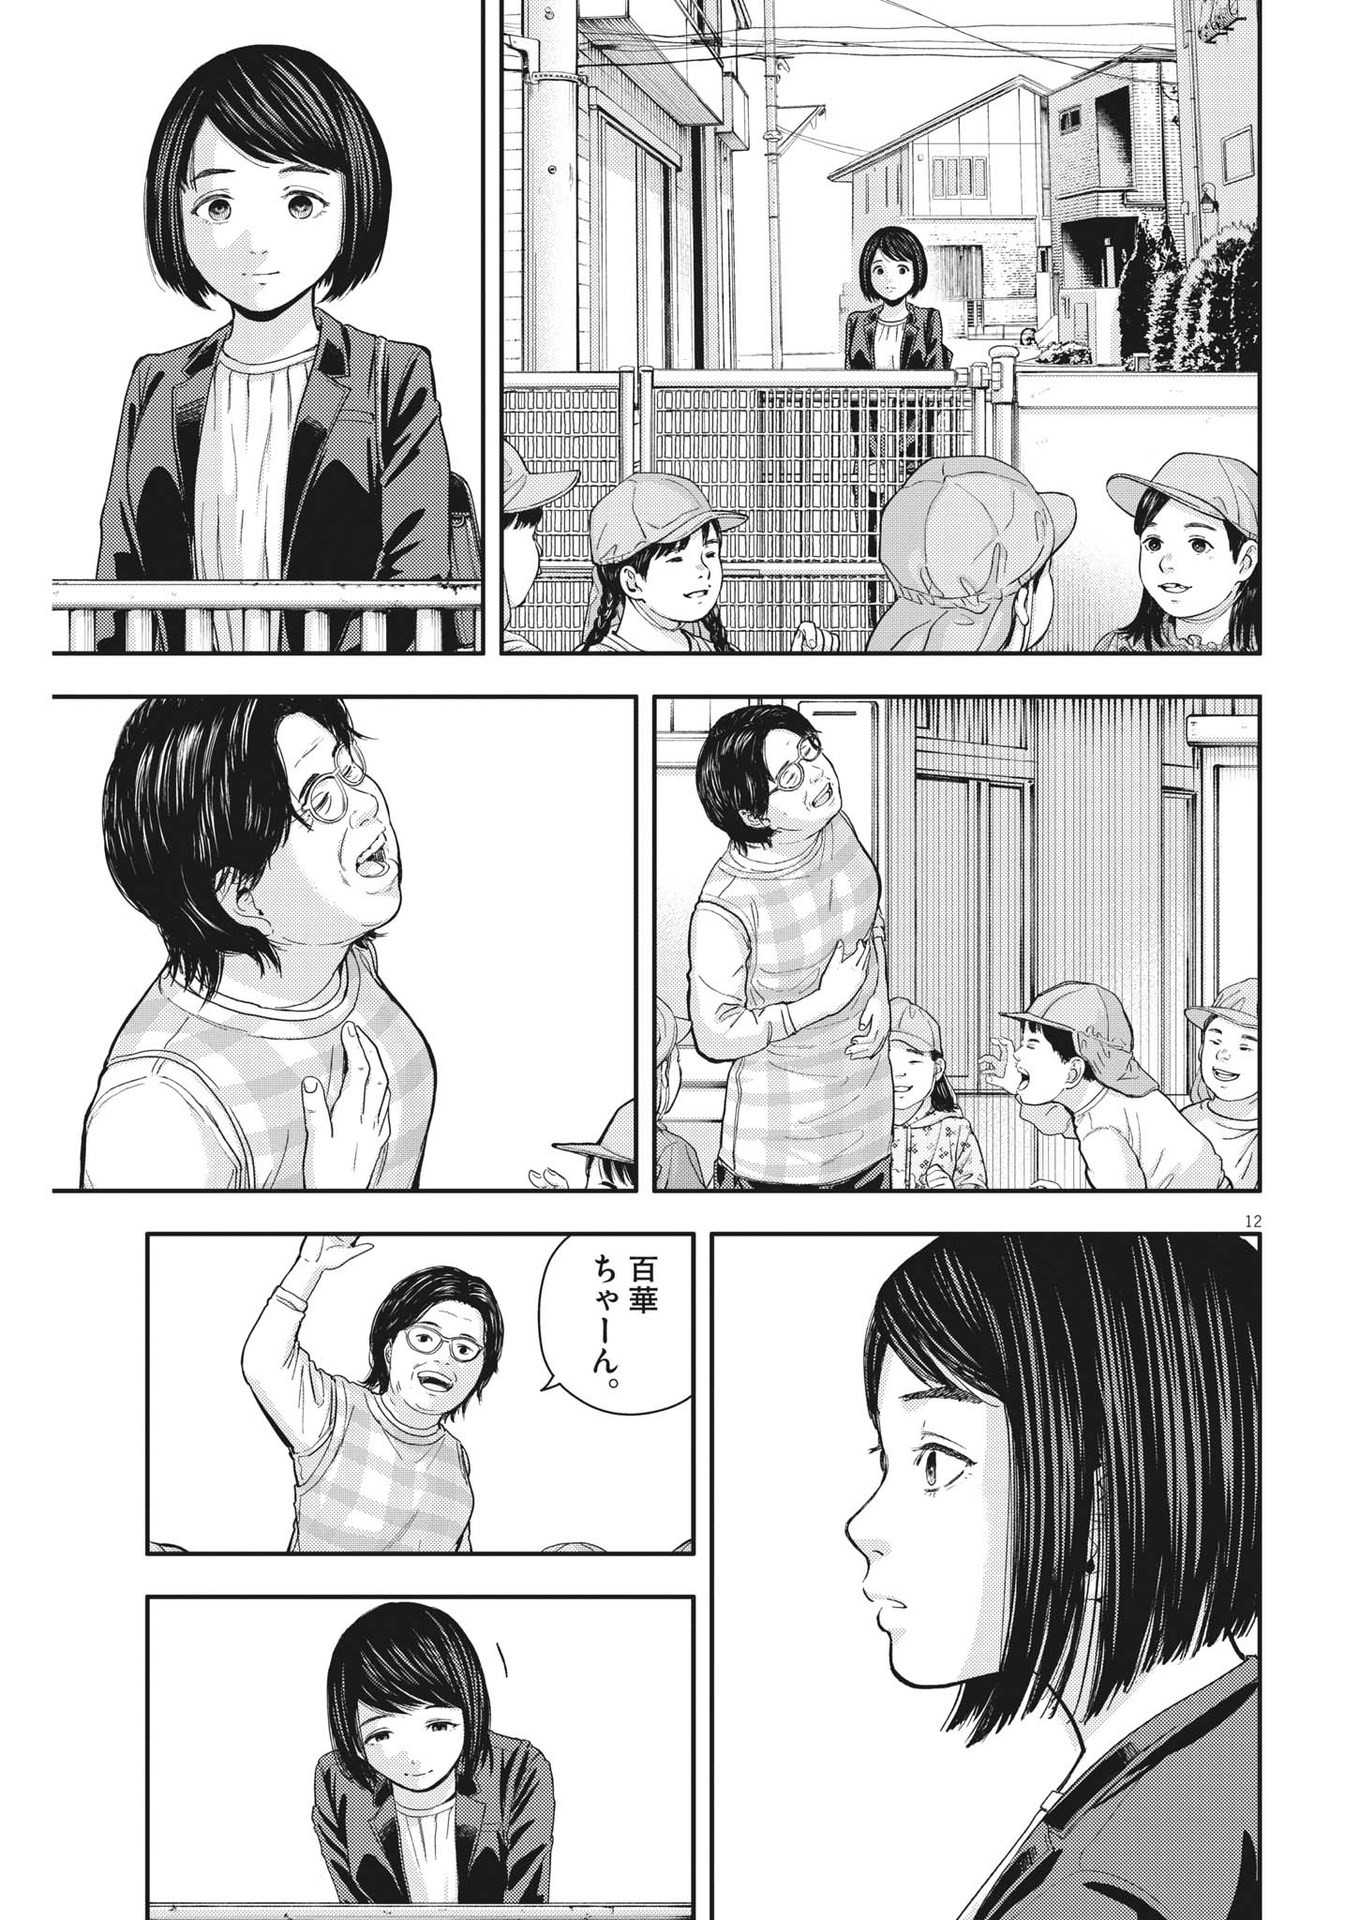 Yumenashi-sensei no Shinroshidou - Chapter 24 - Page 12